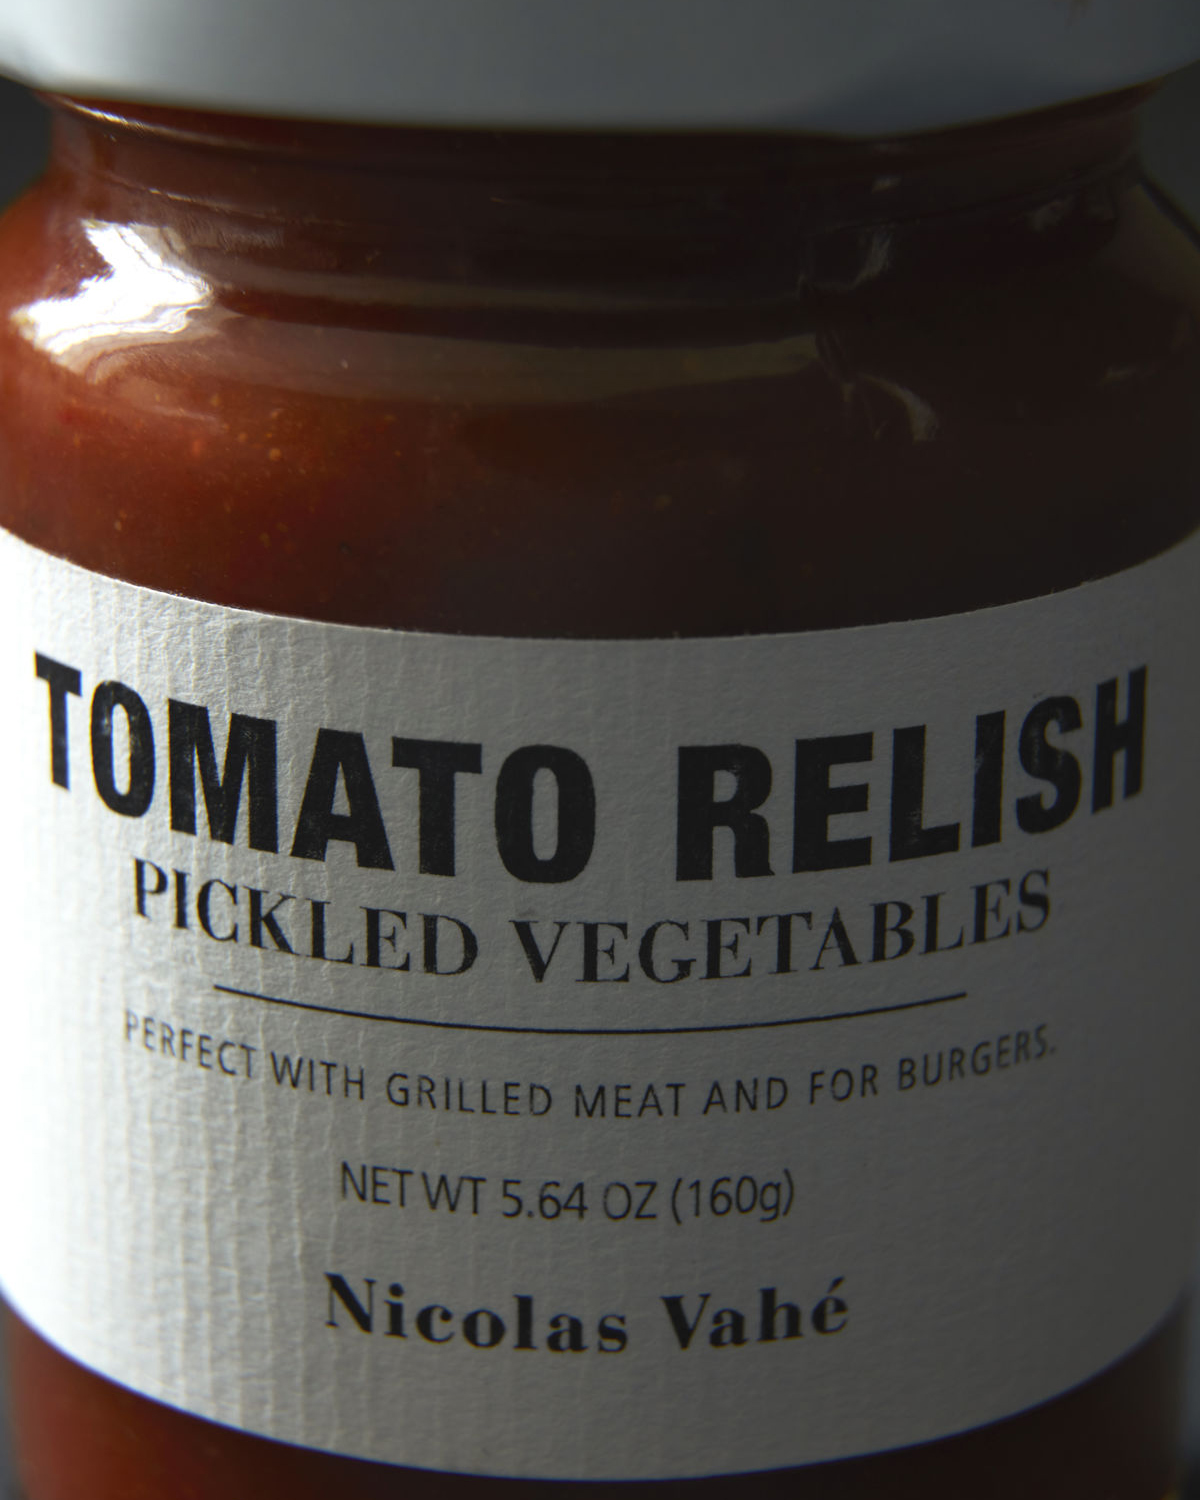 Tomato relish, pickled vegetables, 160 g.